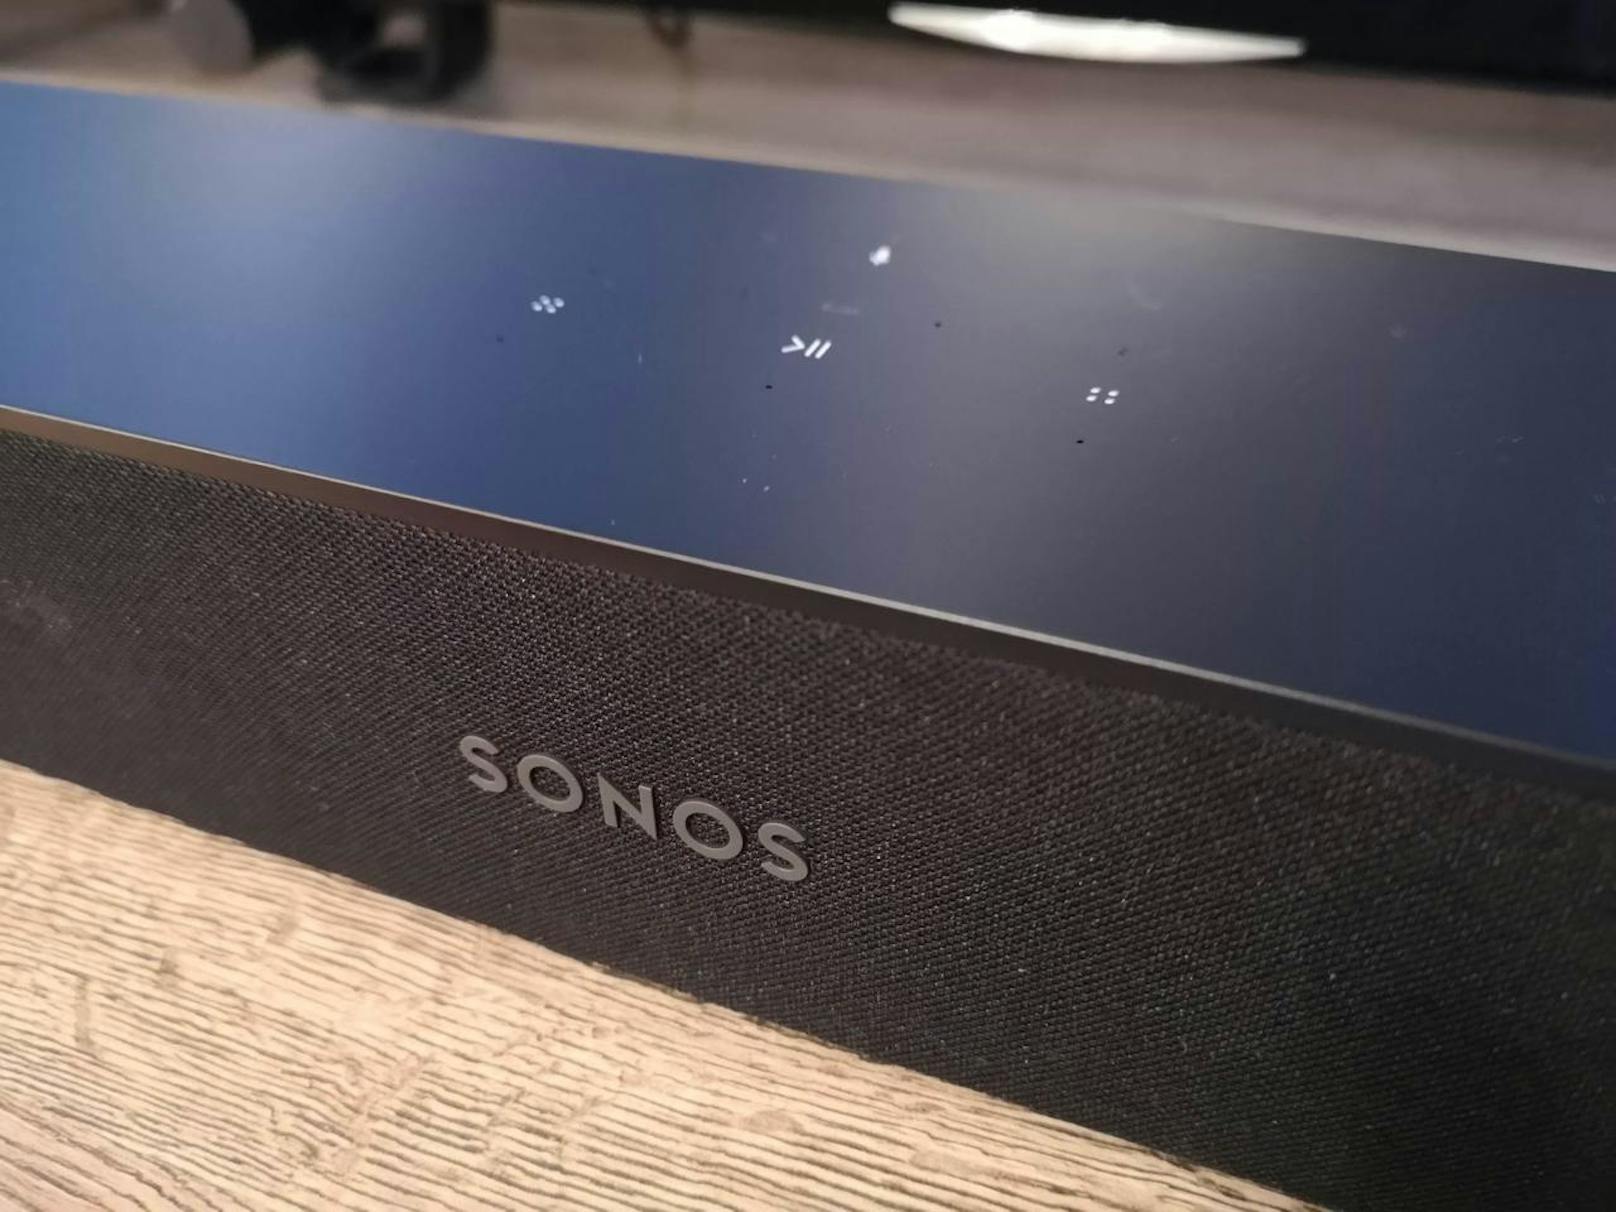 Auf der Vorderseite prangt das Sonos-Logo, auf der Oberseite finden sich die Touch-Buttons für Lautstärke, Musikauswahl und Mikrofon-Stummschaltung. Eine kleine LED zeigt an, ob die Soundbar zuhört, ob sie stumm geschalten ist oder ob sie gerade Feedback gibt.